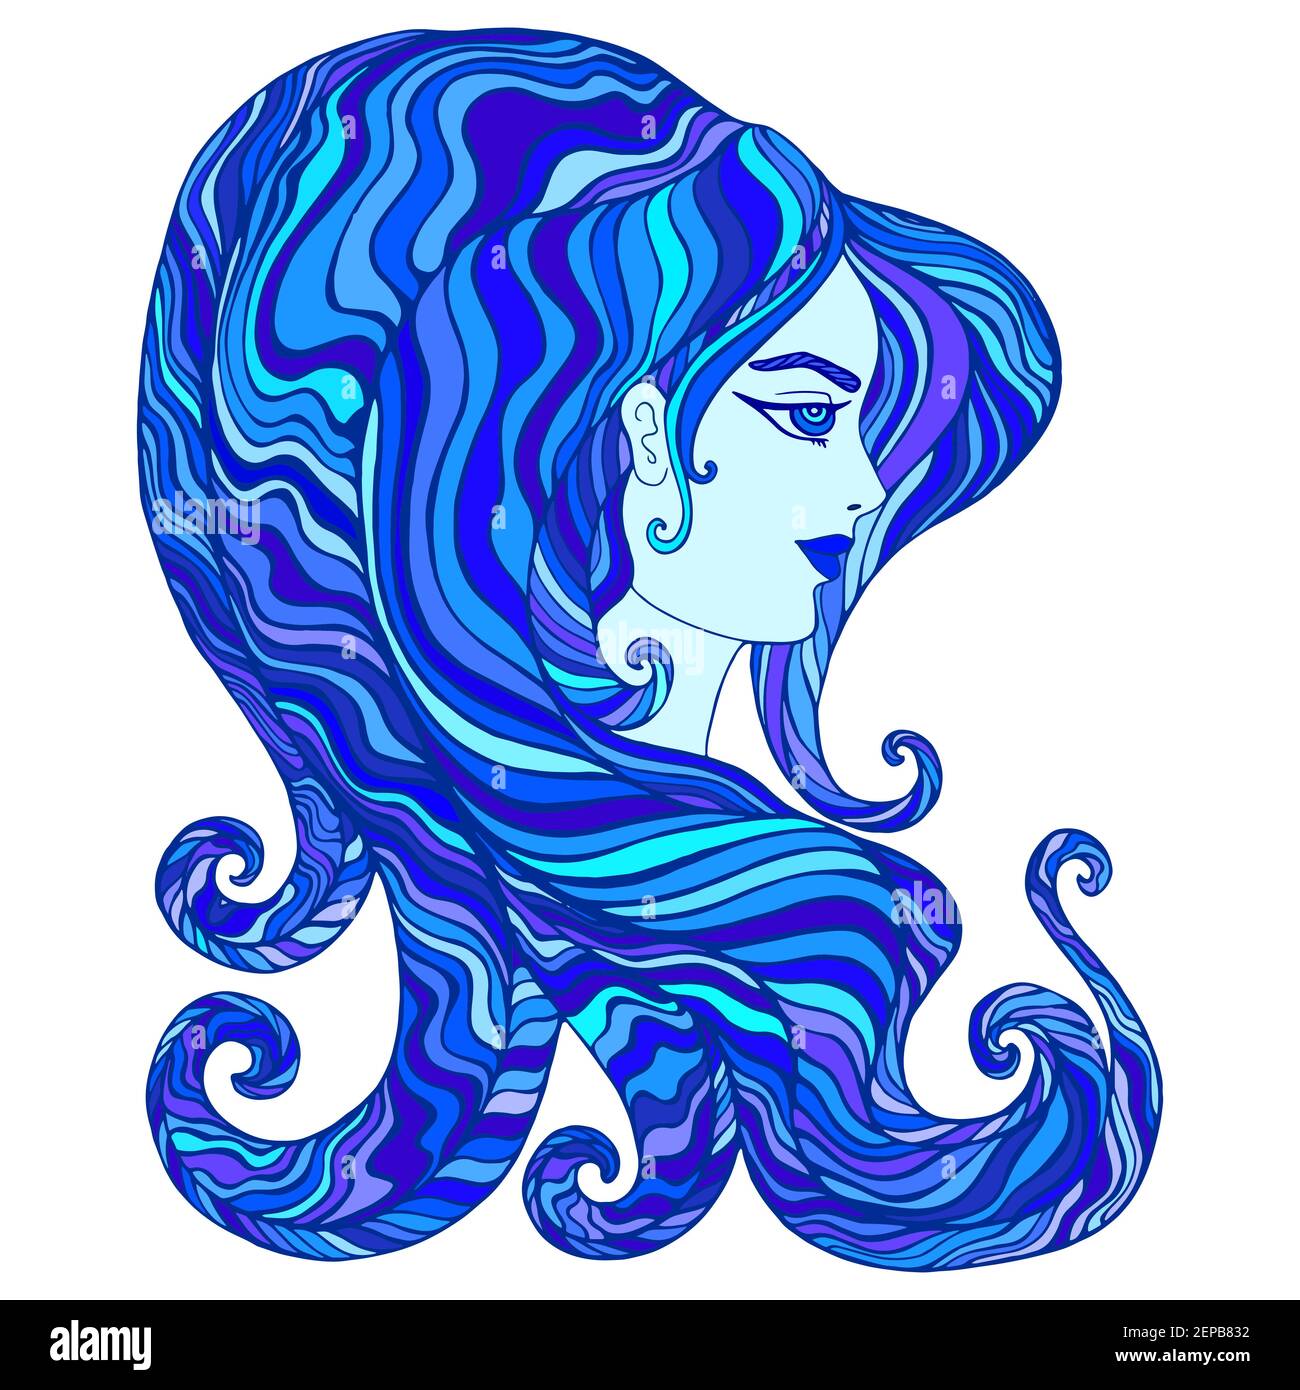 Göttin des Wassers, Cyan, dunkelblau, aquamarin Farbe Haar. Isoliert auf weißem Hintergrund. Fantastische abstrakte Frau Wellen Linie Haar. Surreale Fantasiekunst Stock Vektor